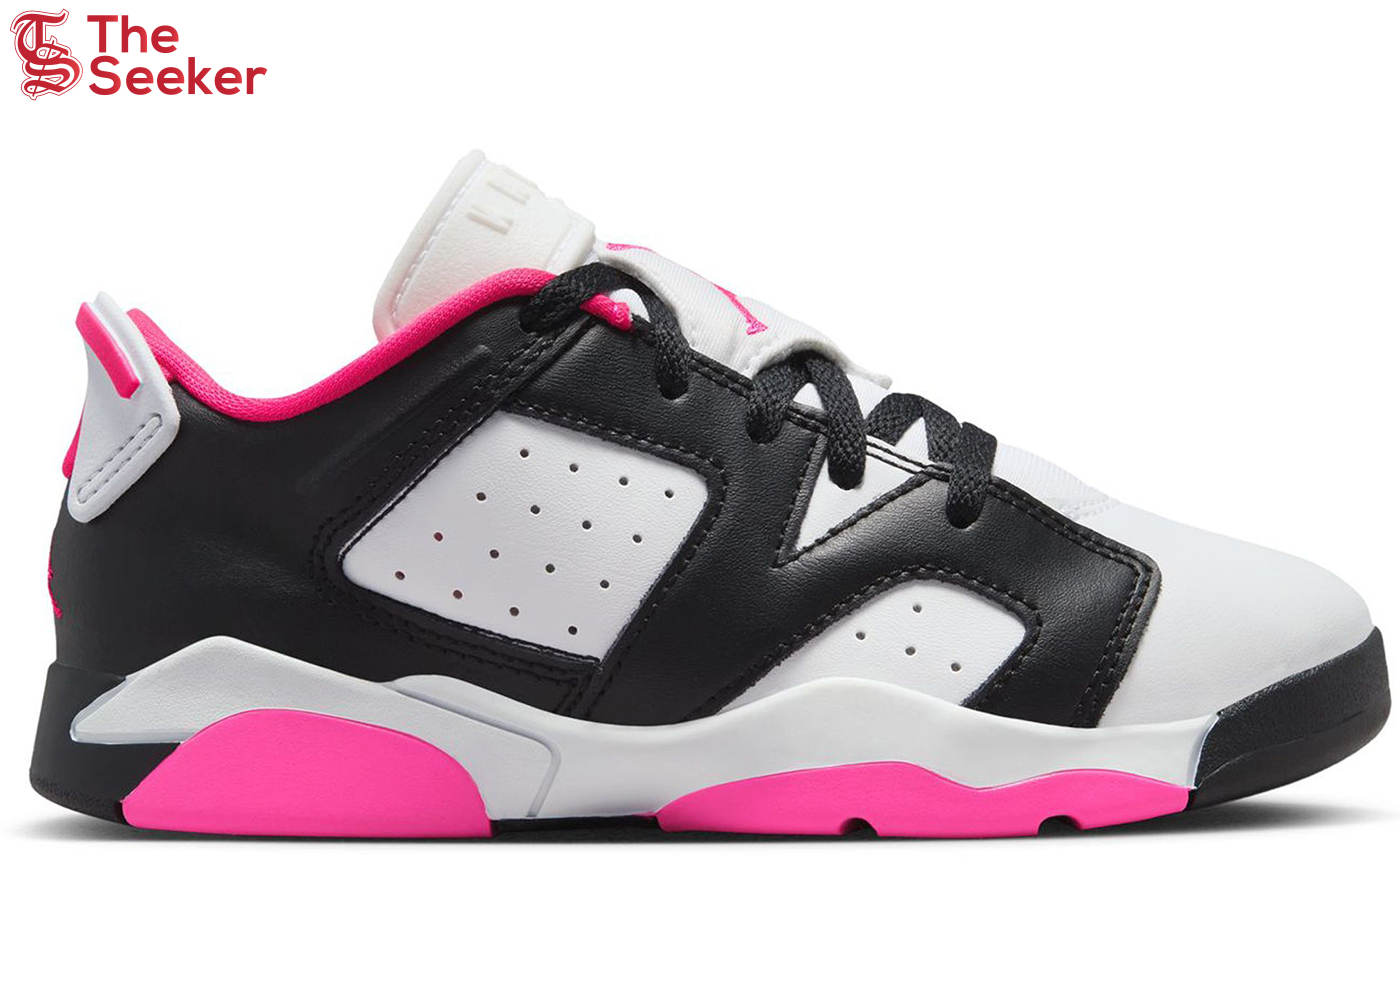 Jordan 6 Retro Low Fierce Pink (PS)